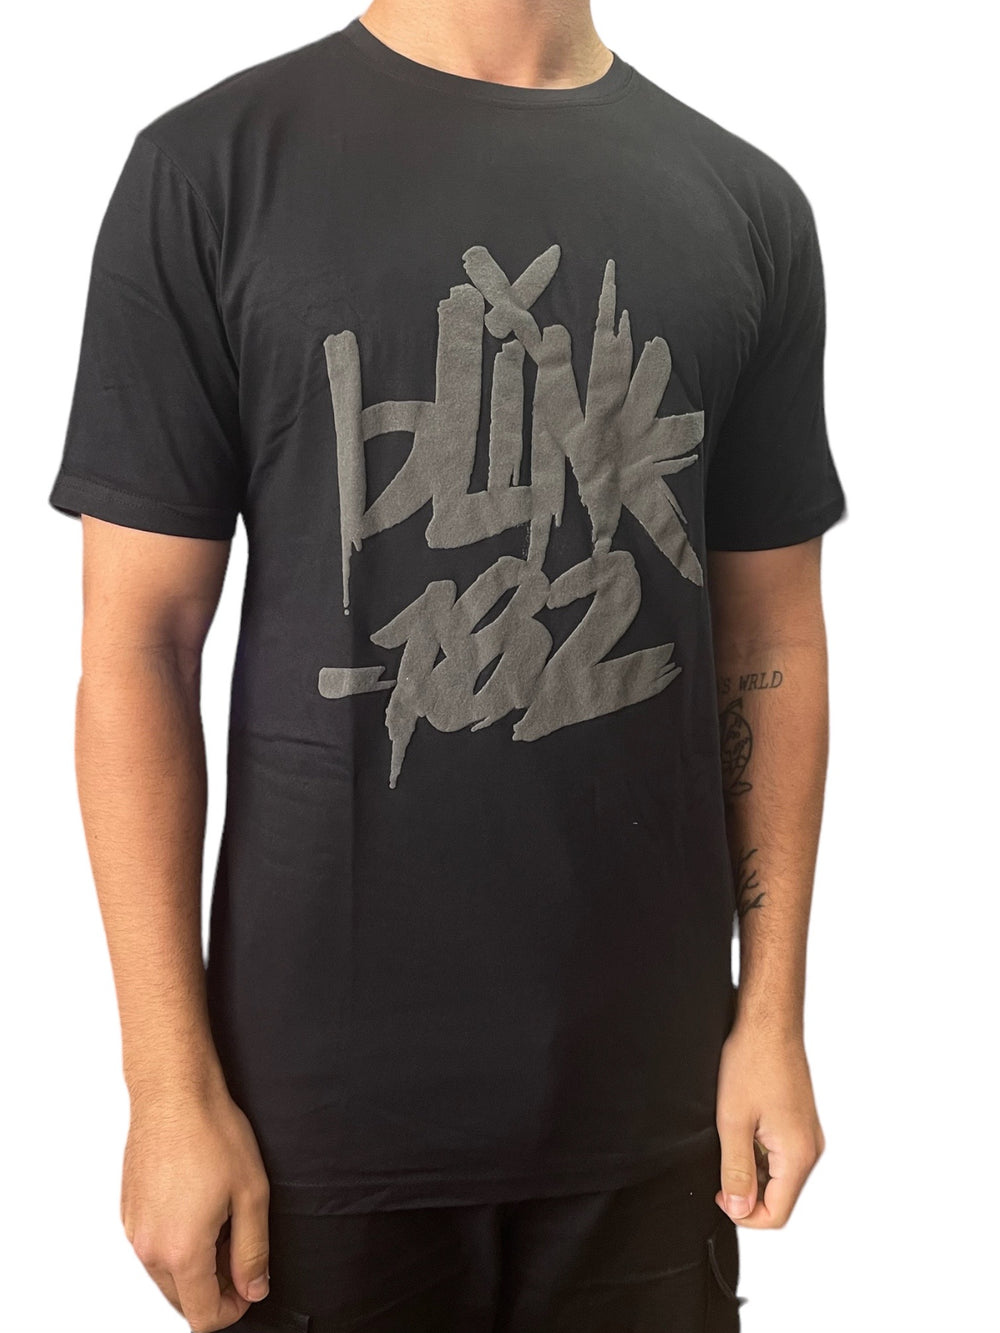 Blink 182 Neon Logo Official Unisex T Shirt Brand New Various Sizes